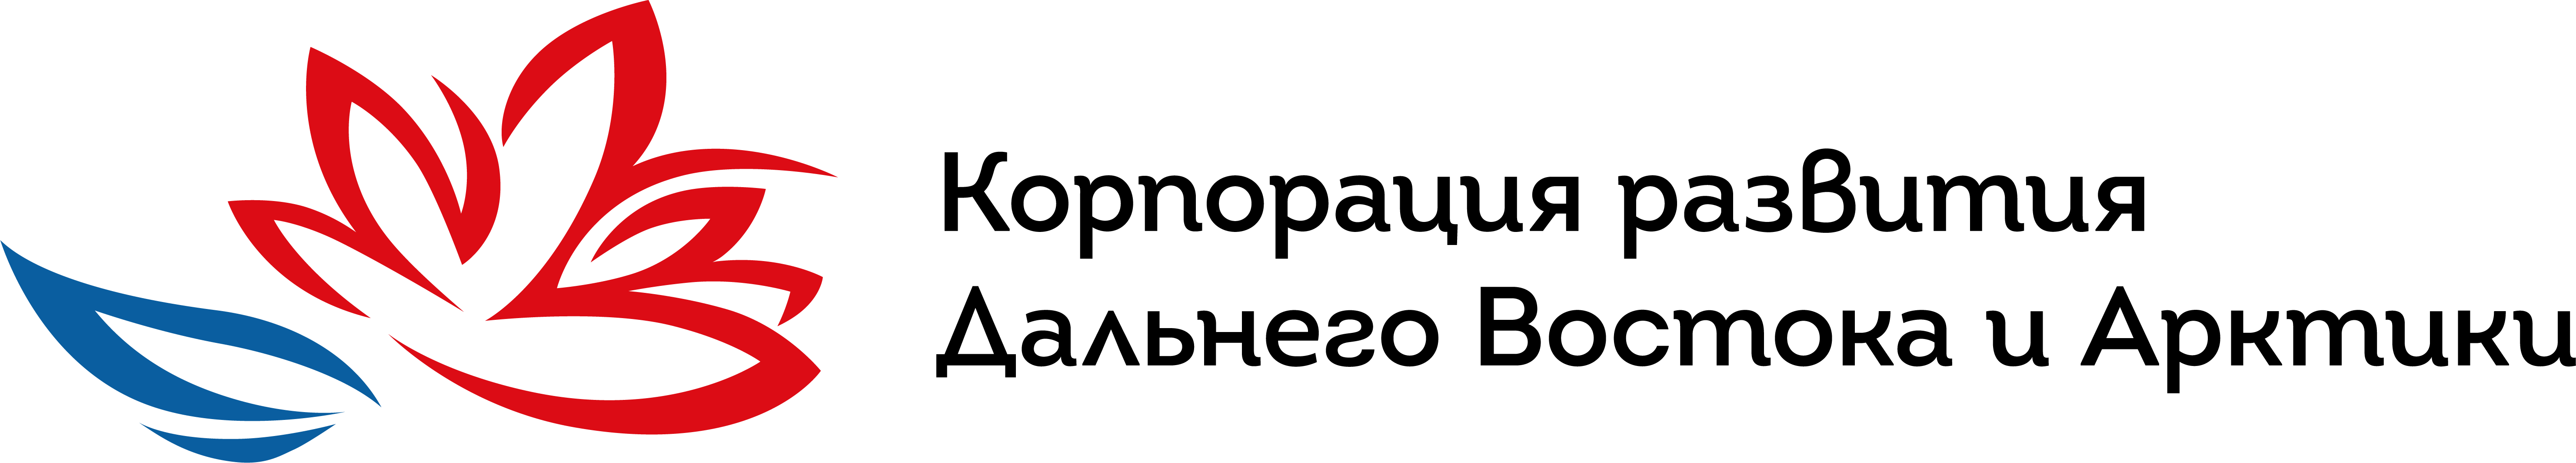 erdc_logo